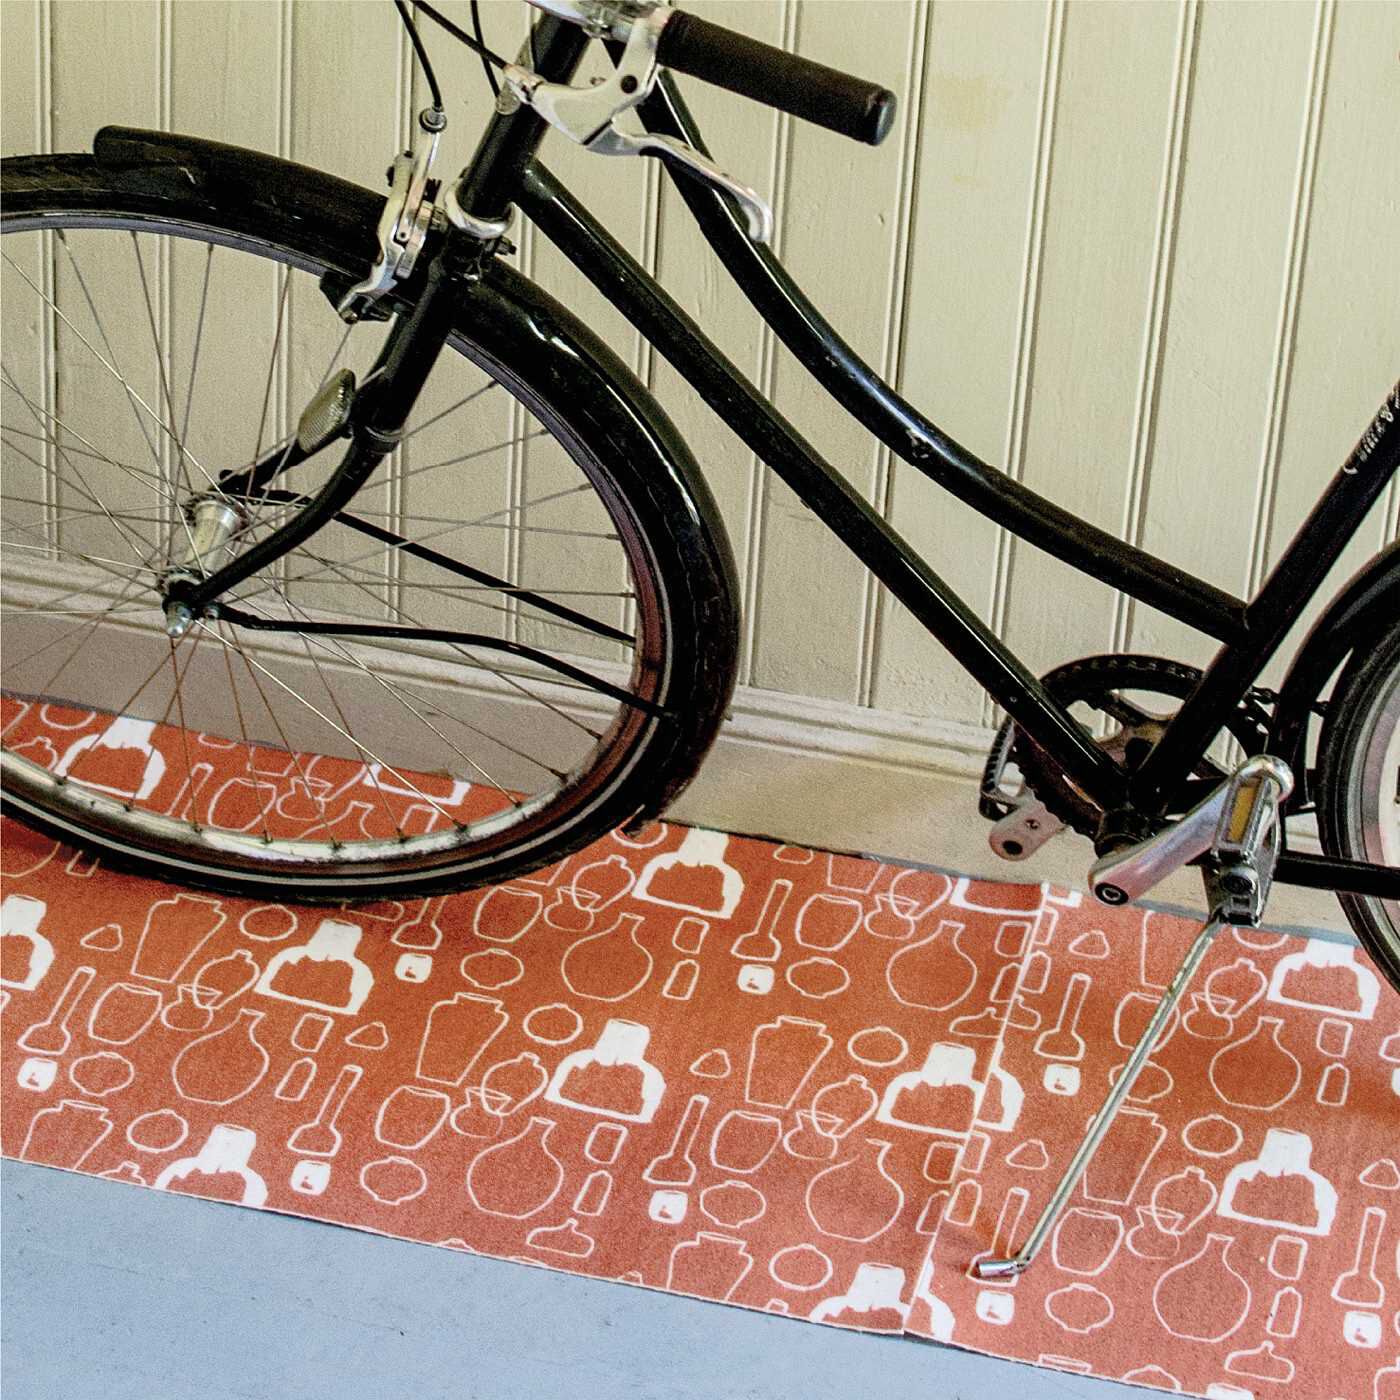 SAANA JA OLLI|サーナ ヤ オッリ　敷くだけでアートがいざなう　憧（あこが）れのフィンランドの暮らし　吸着でずれにくいフロアマットセットの会|室内保管している自転車の下に。